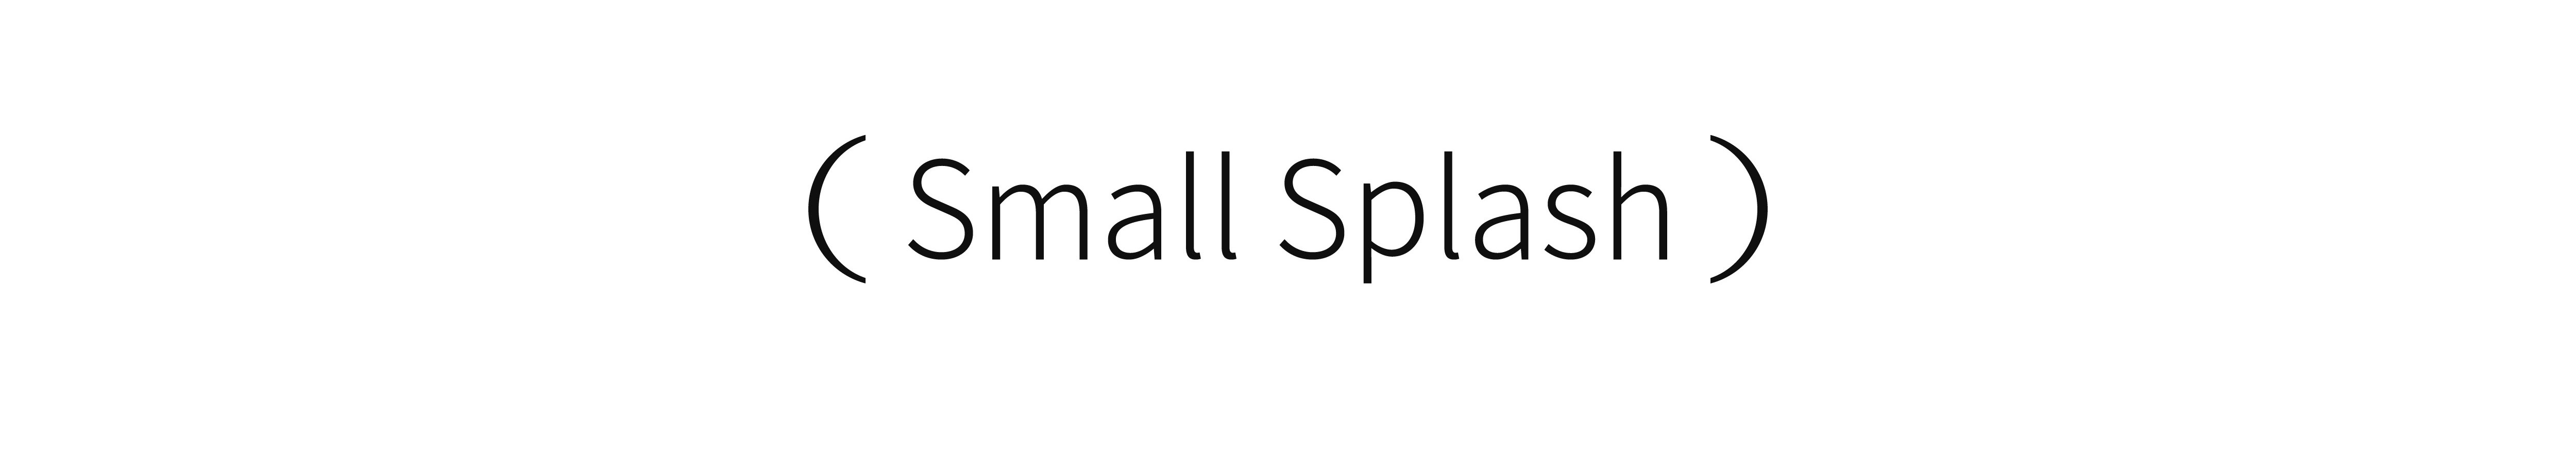 Small Splash's profile banner